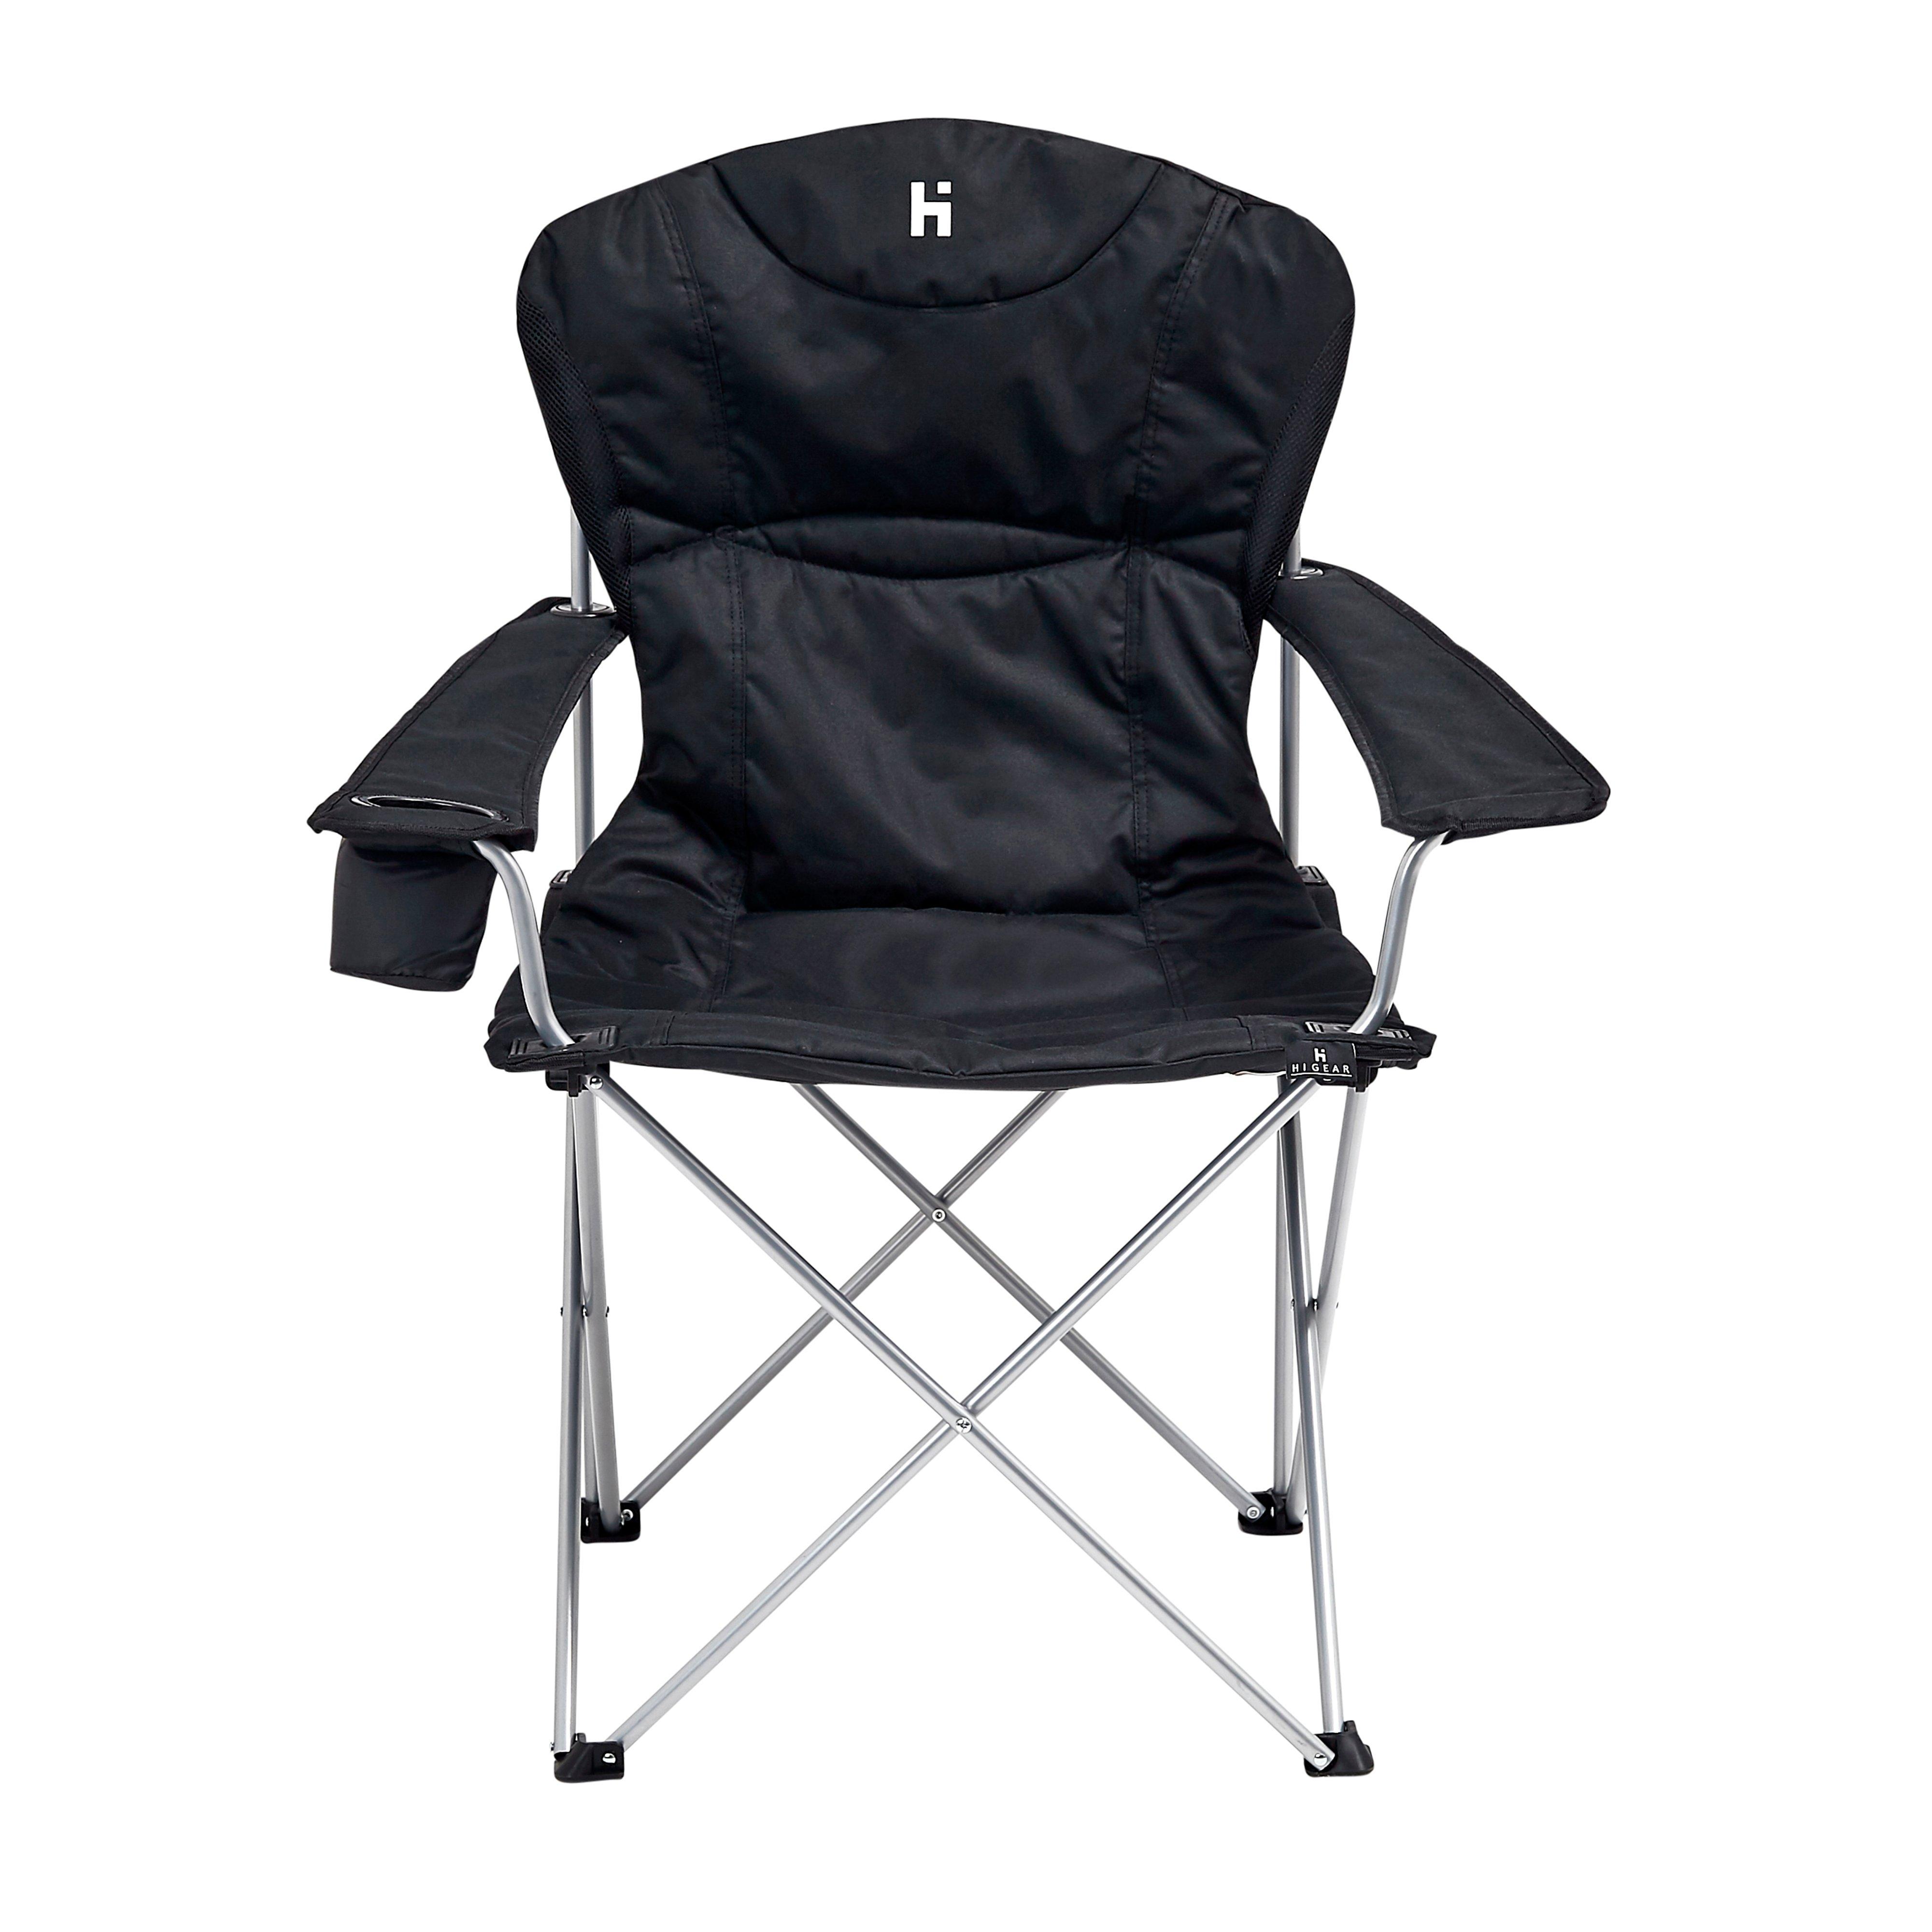 New Hi-Gear Kentucky Classic Chair